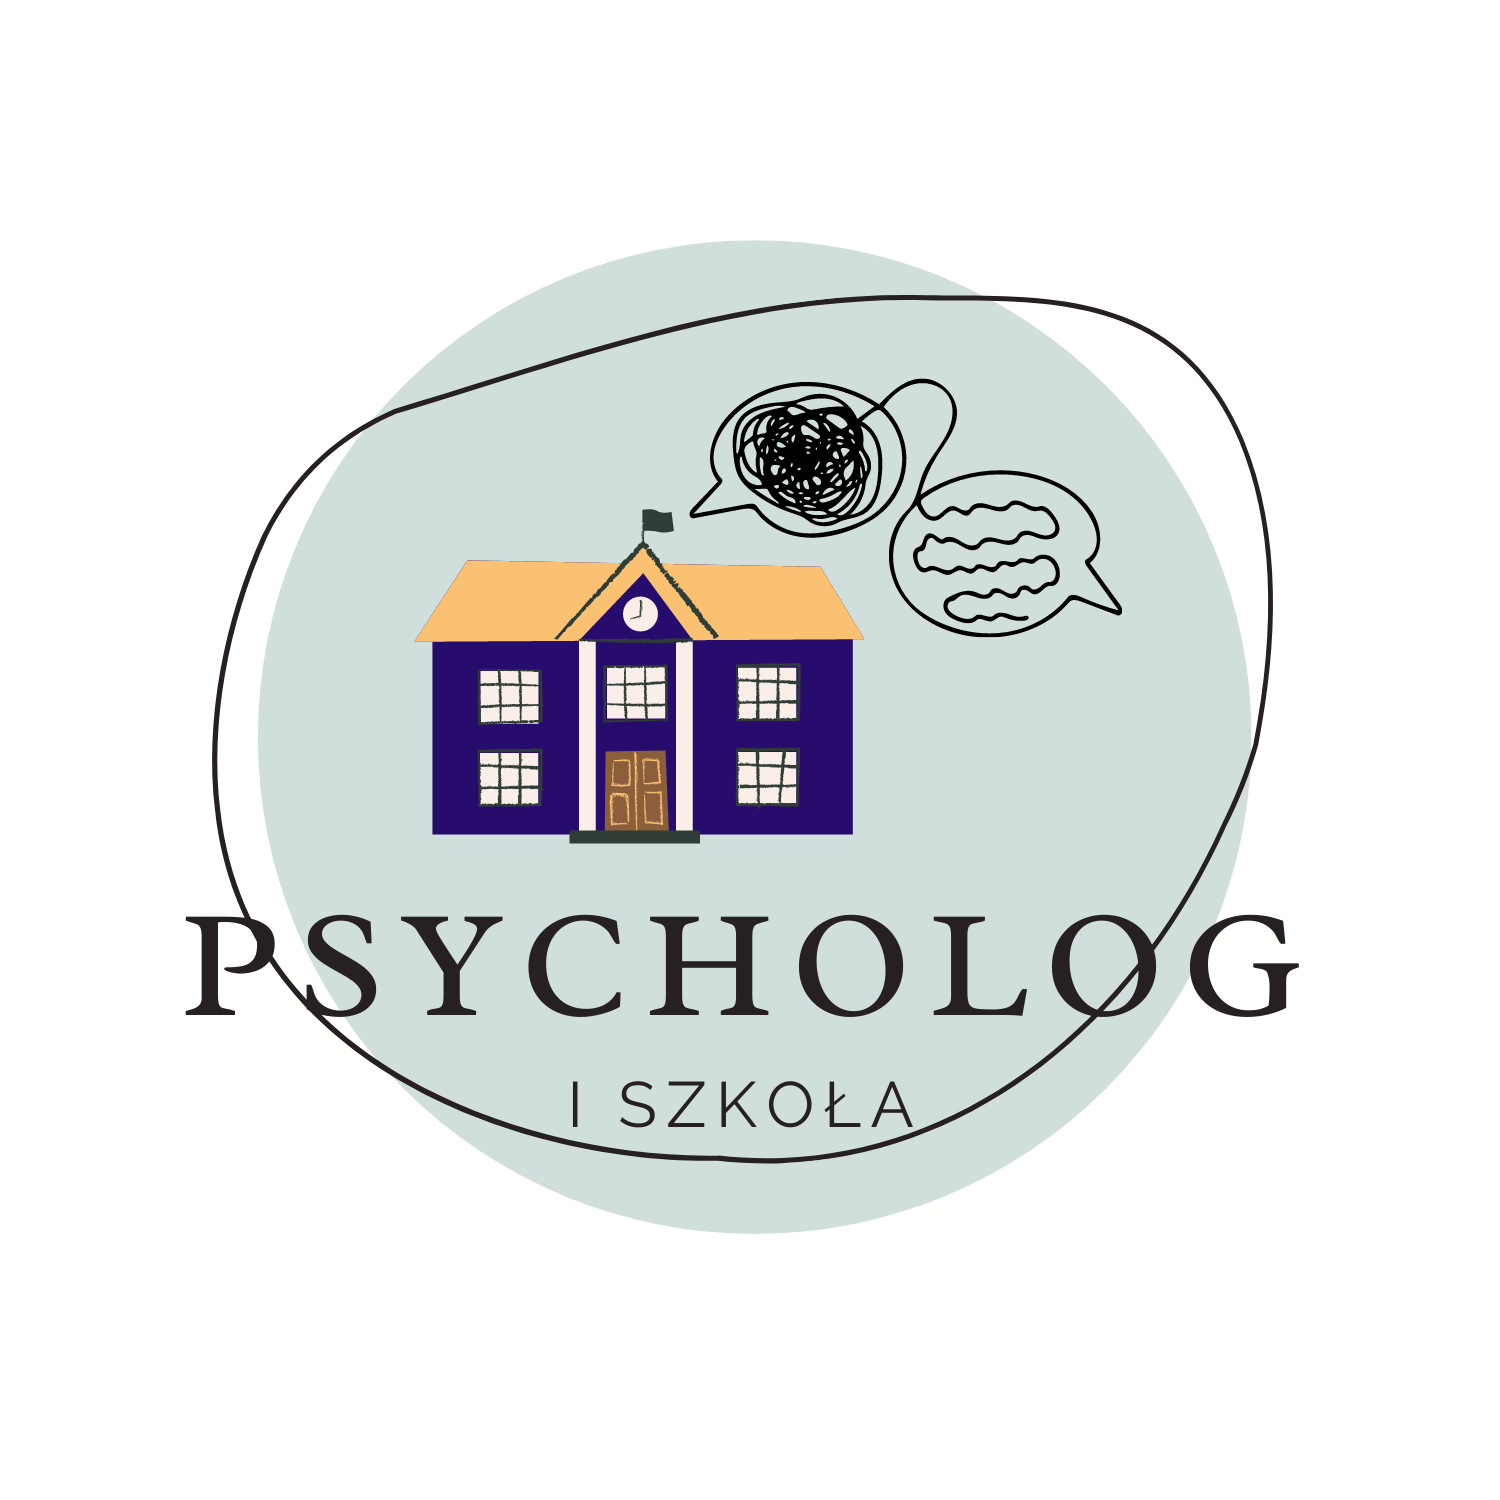 Psycholog i szkoła